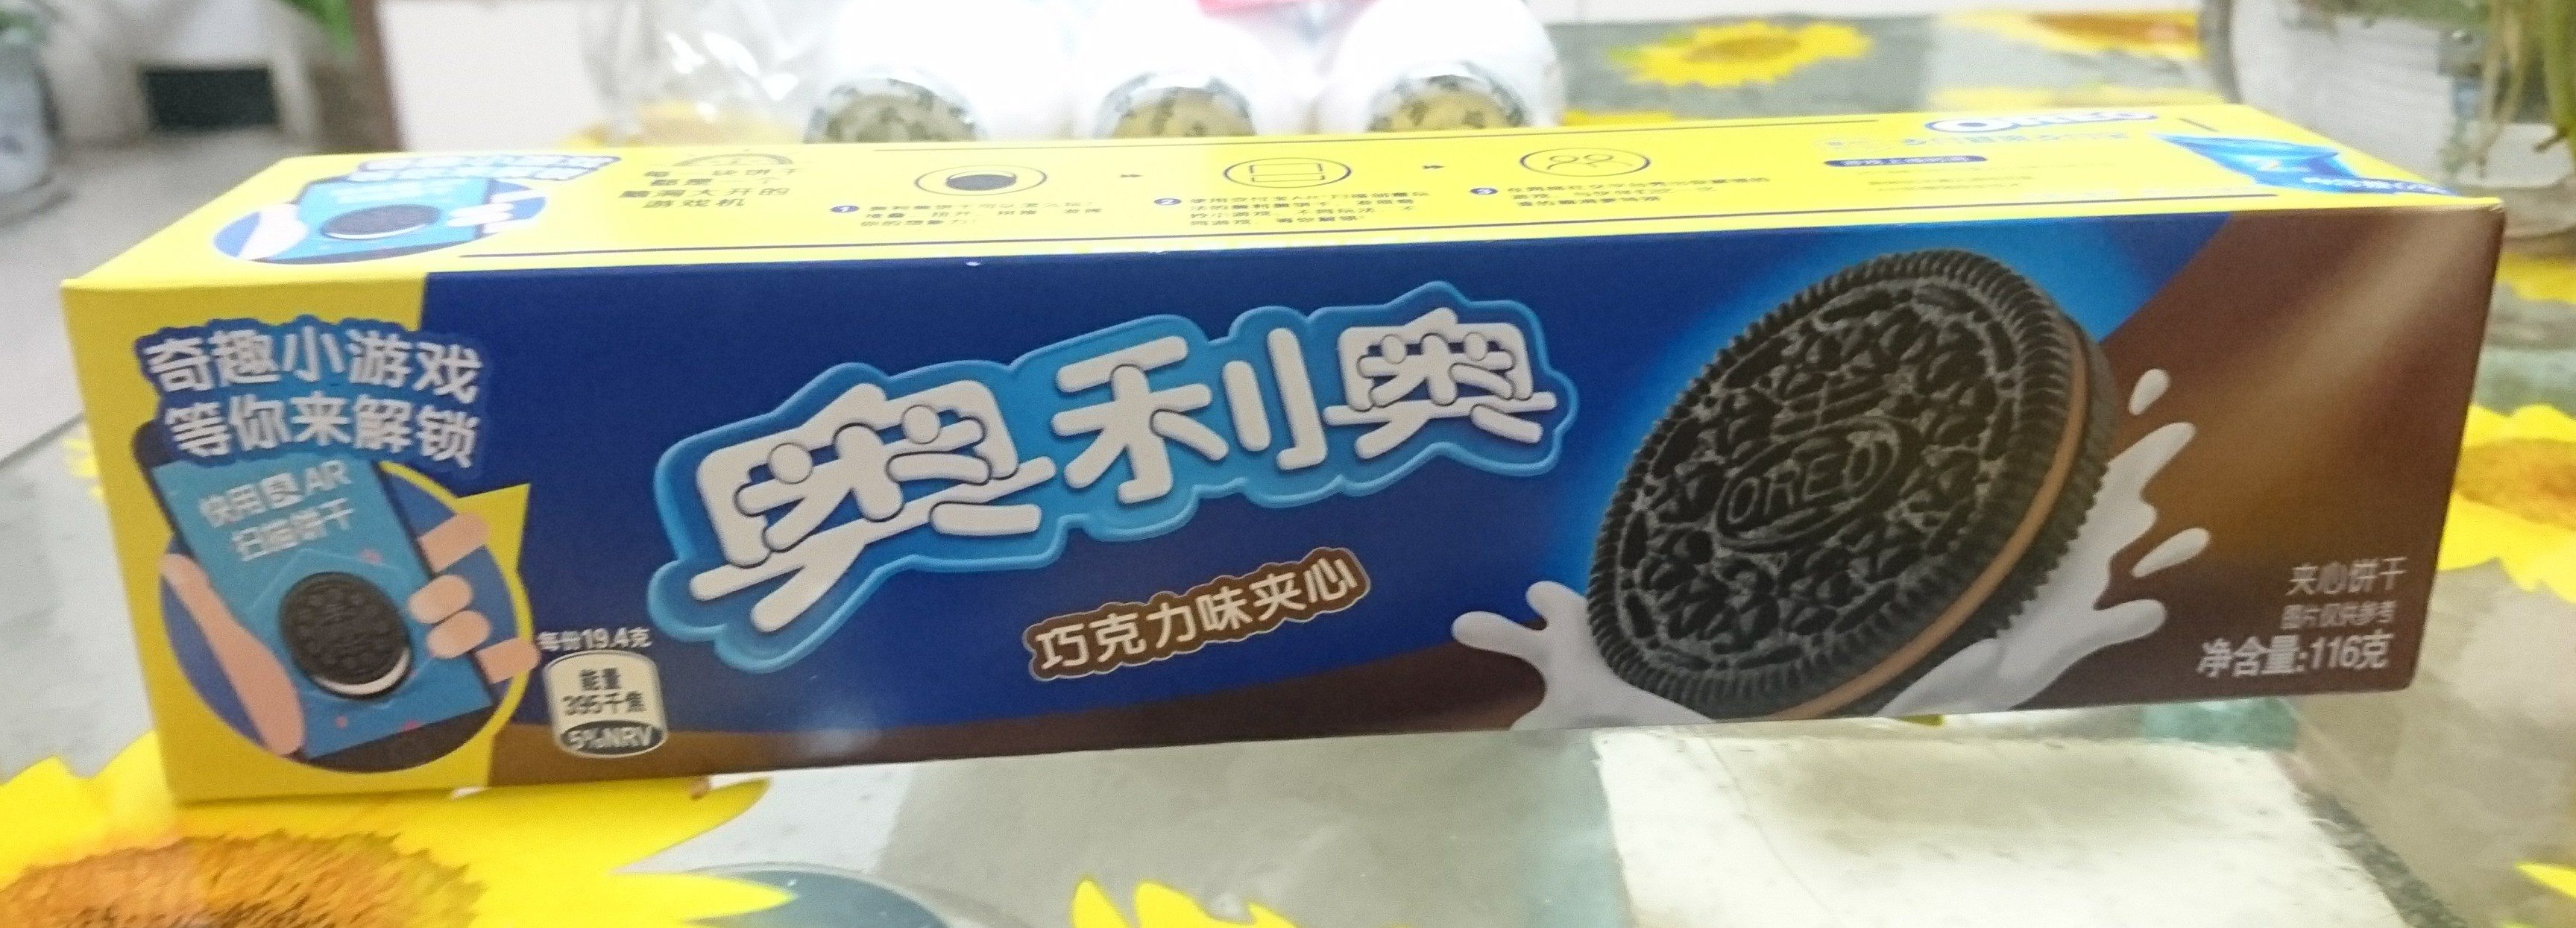 奥利奥巧克力味夹心饼干 - 产品 - zh